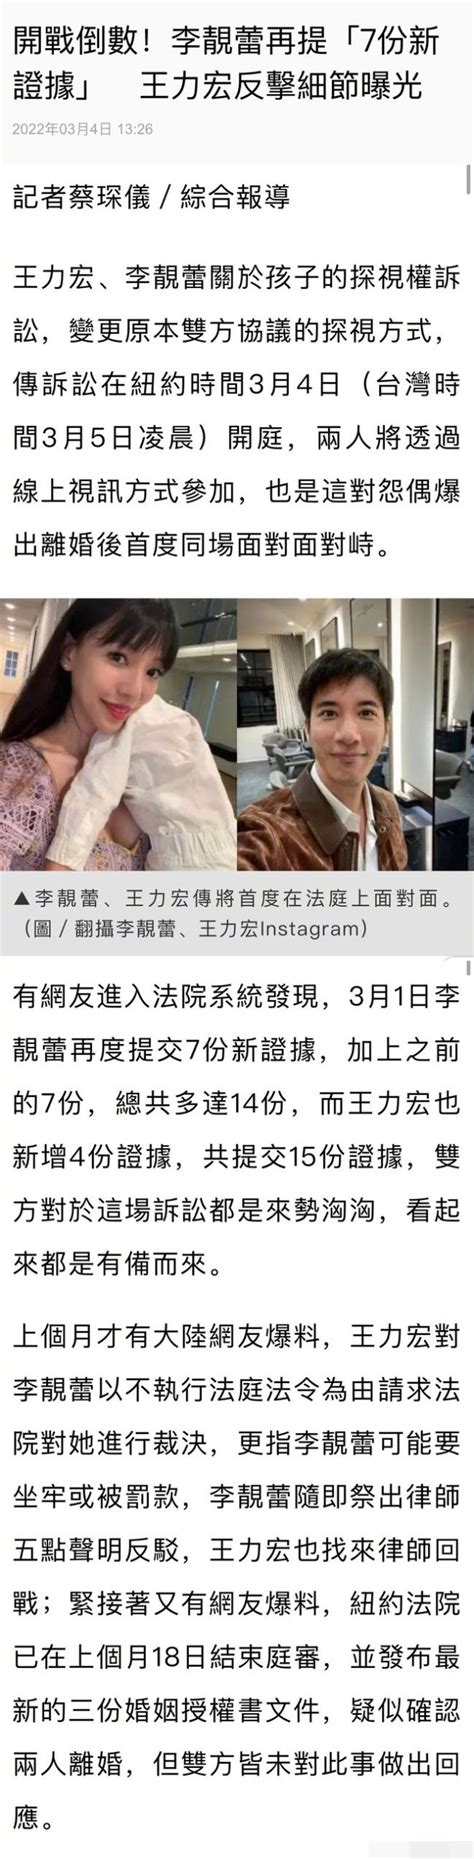 王力宏李靓蕾案17日台北开庭 全程采取视讯方式——上海热线娱乐频道